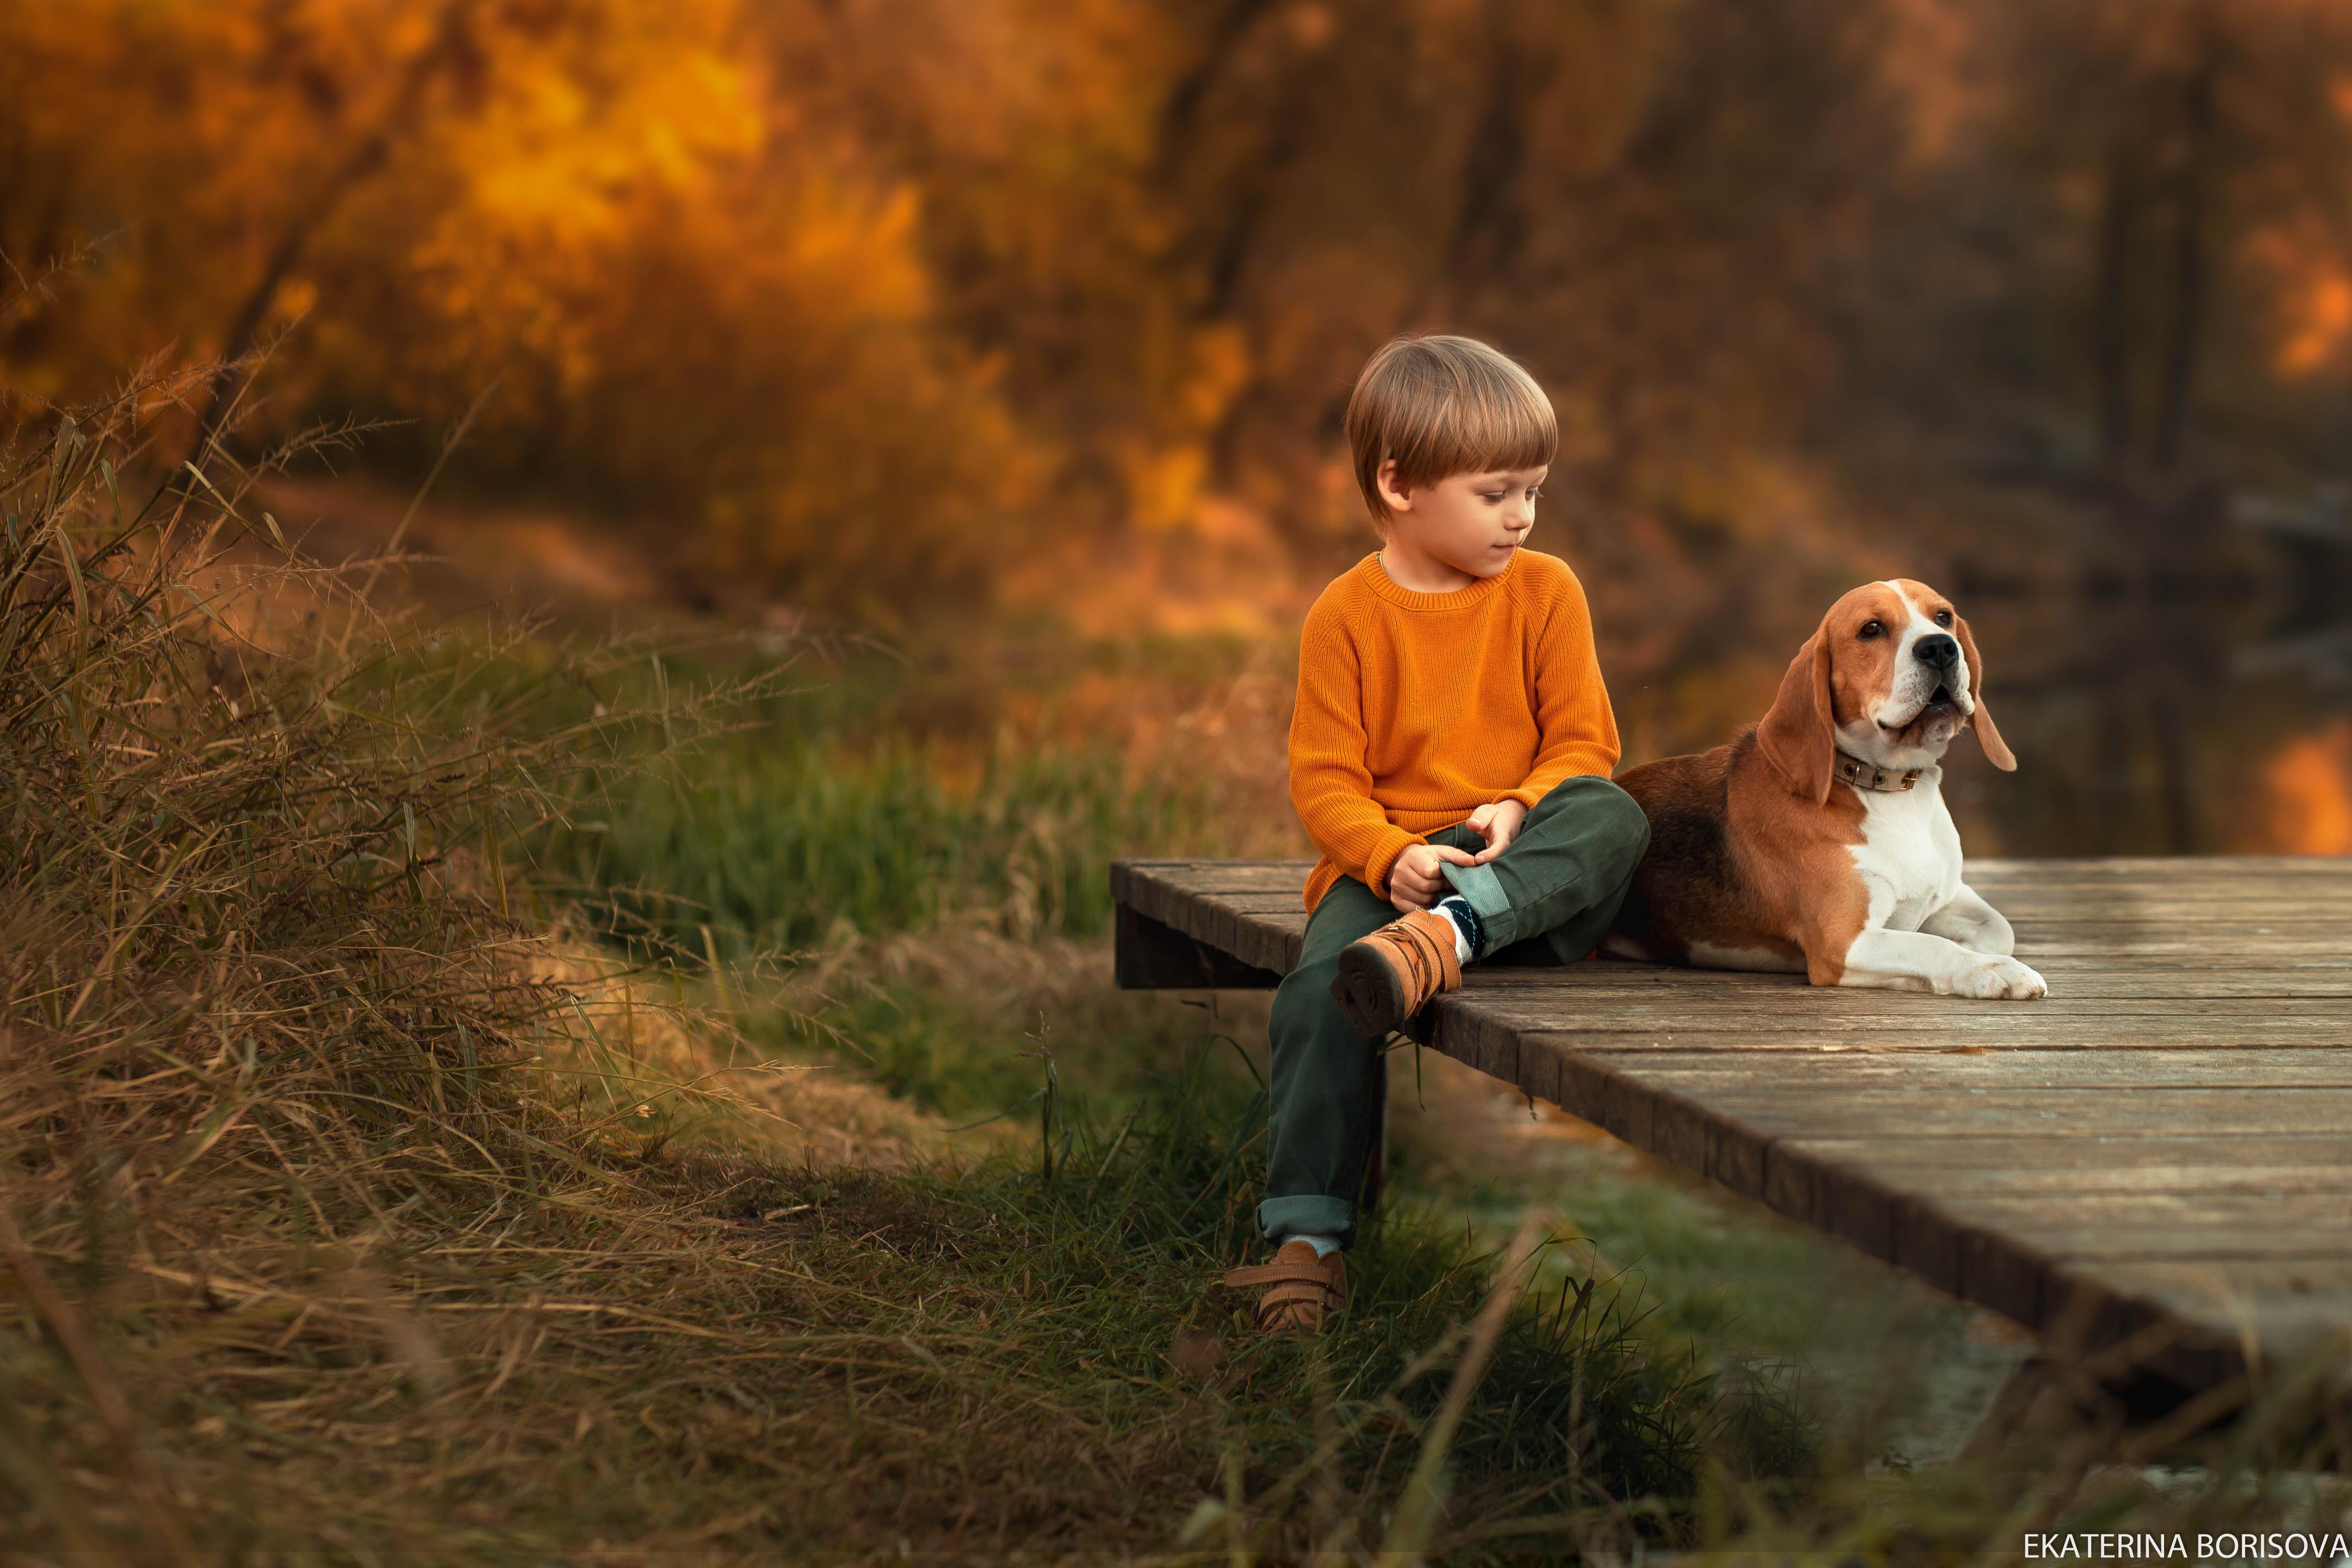 фото с собачкой ребенок и собачка мальчик природа животные собаки бигли бигль малыш и собачка, Екатерина Борисова